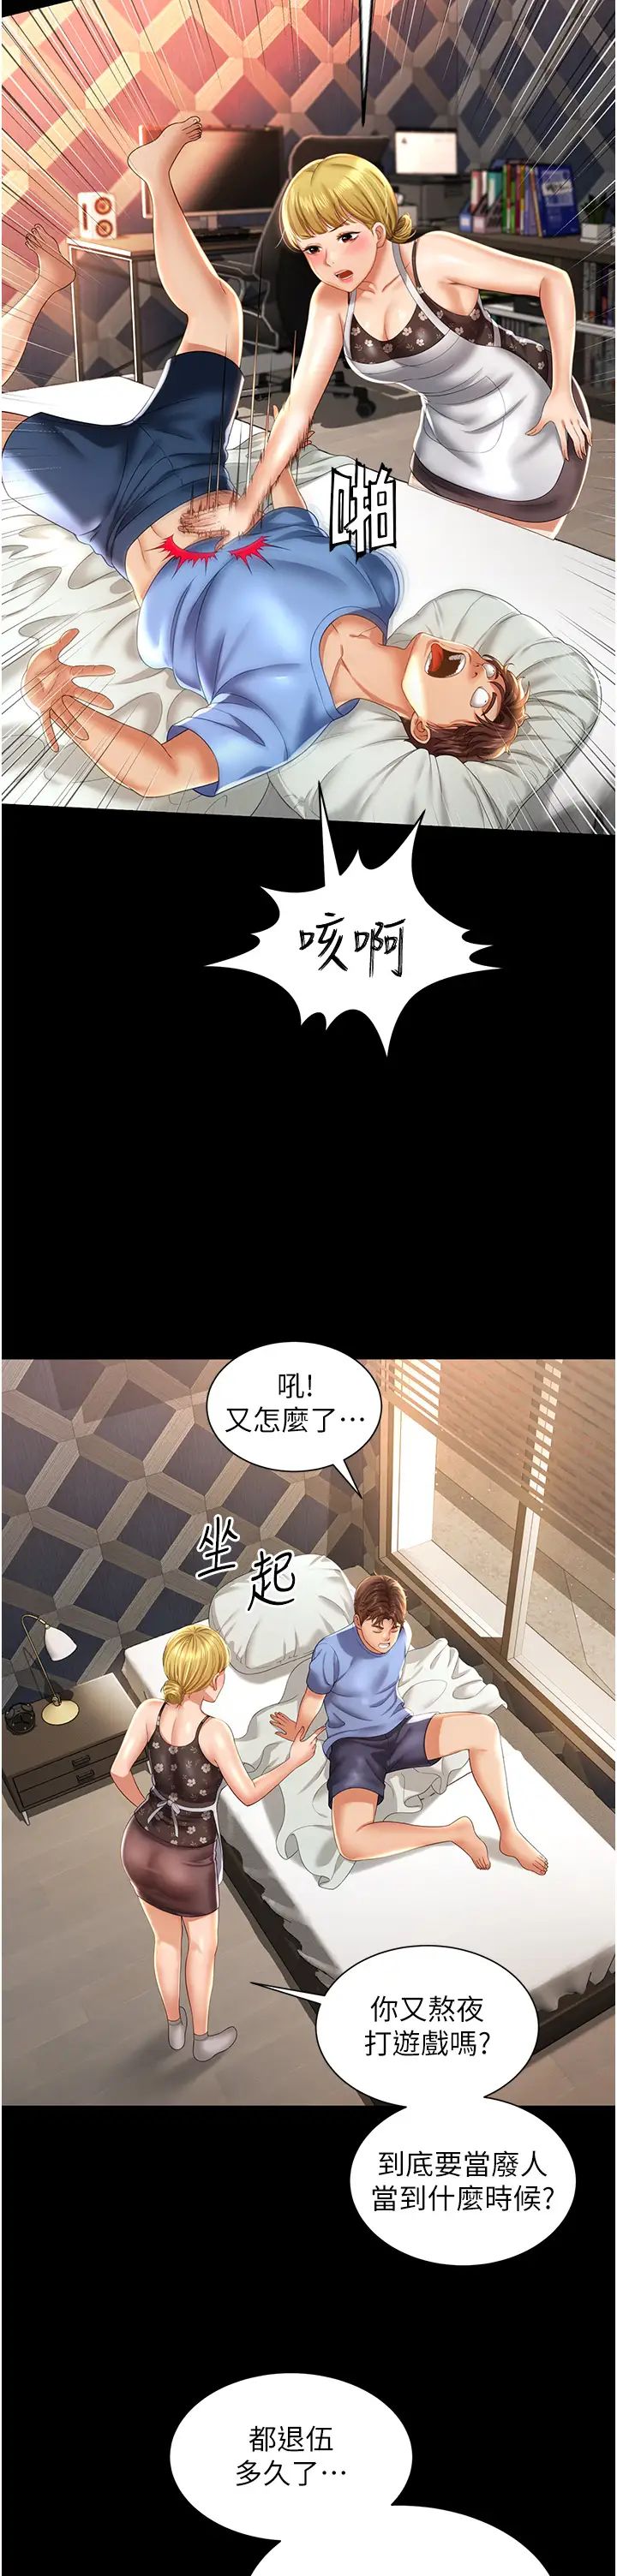 《萌鬼飯店實錄》在线观看 第1话-高级饭店的桃色祕密?! 漫画图片9